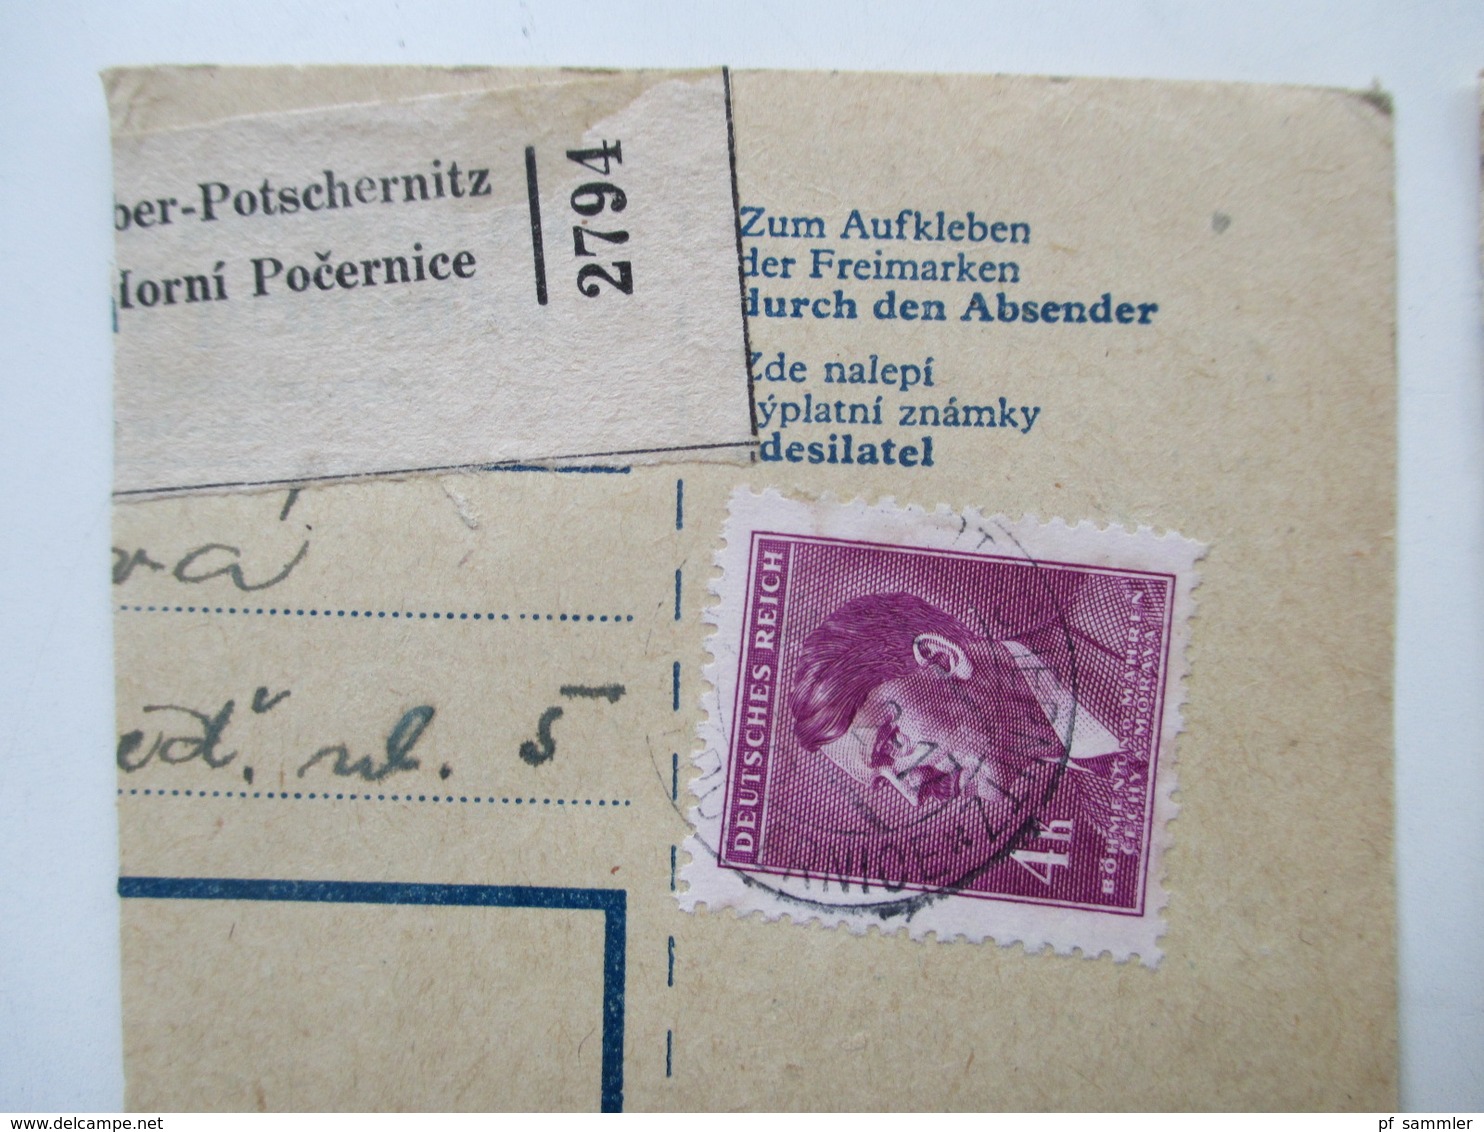 Böhmen und Mähren Paketkarten / Postanweisung Abschnitte 147 Stück! Schöne Frankaturen! Randstücke! Fundgrube! Perfins